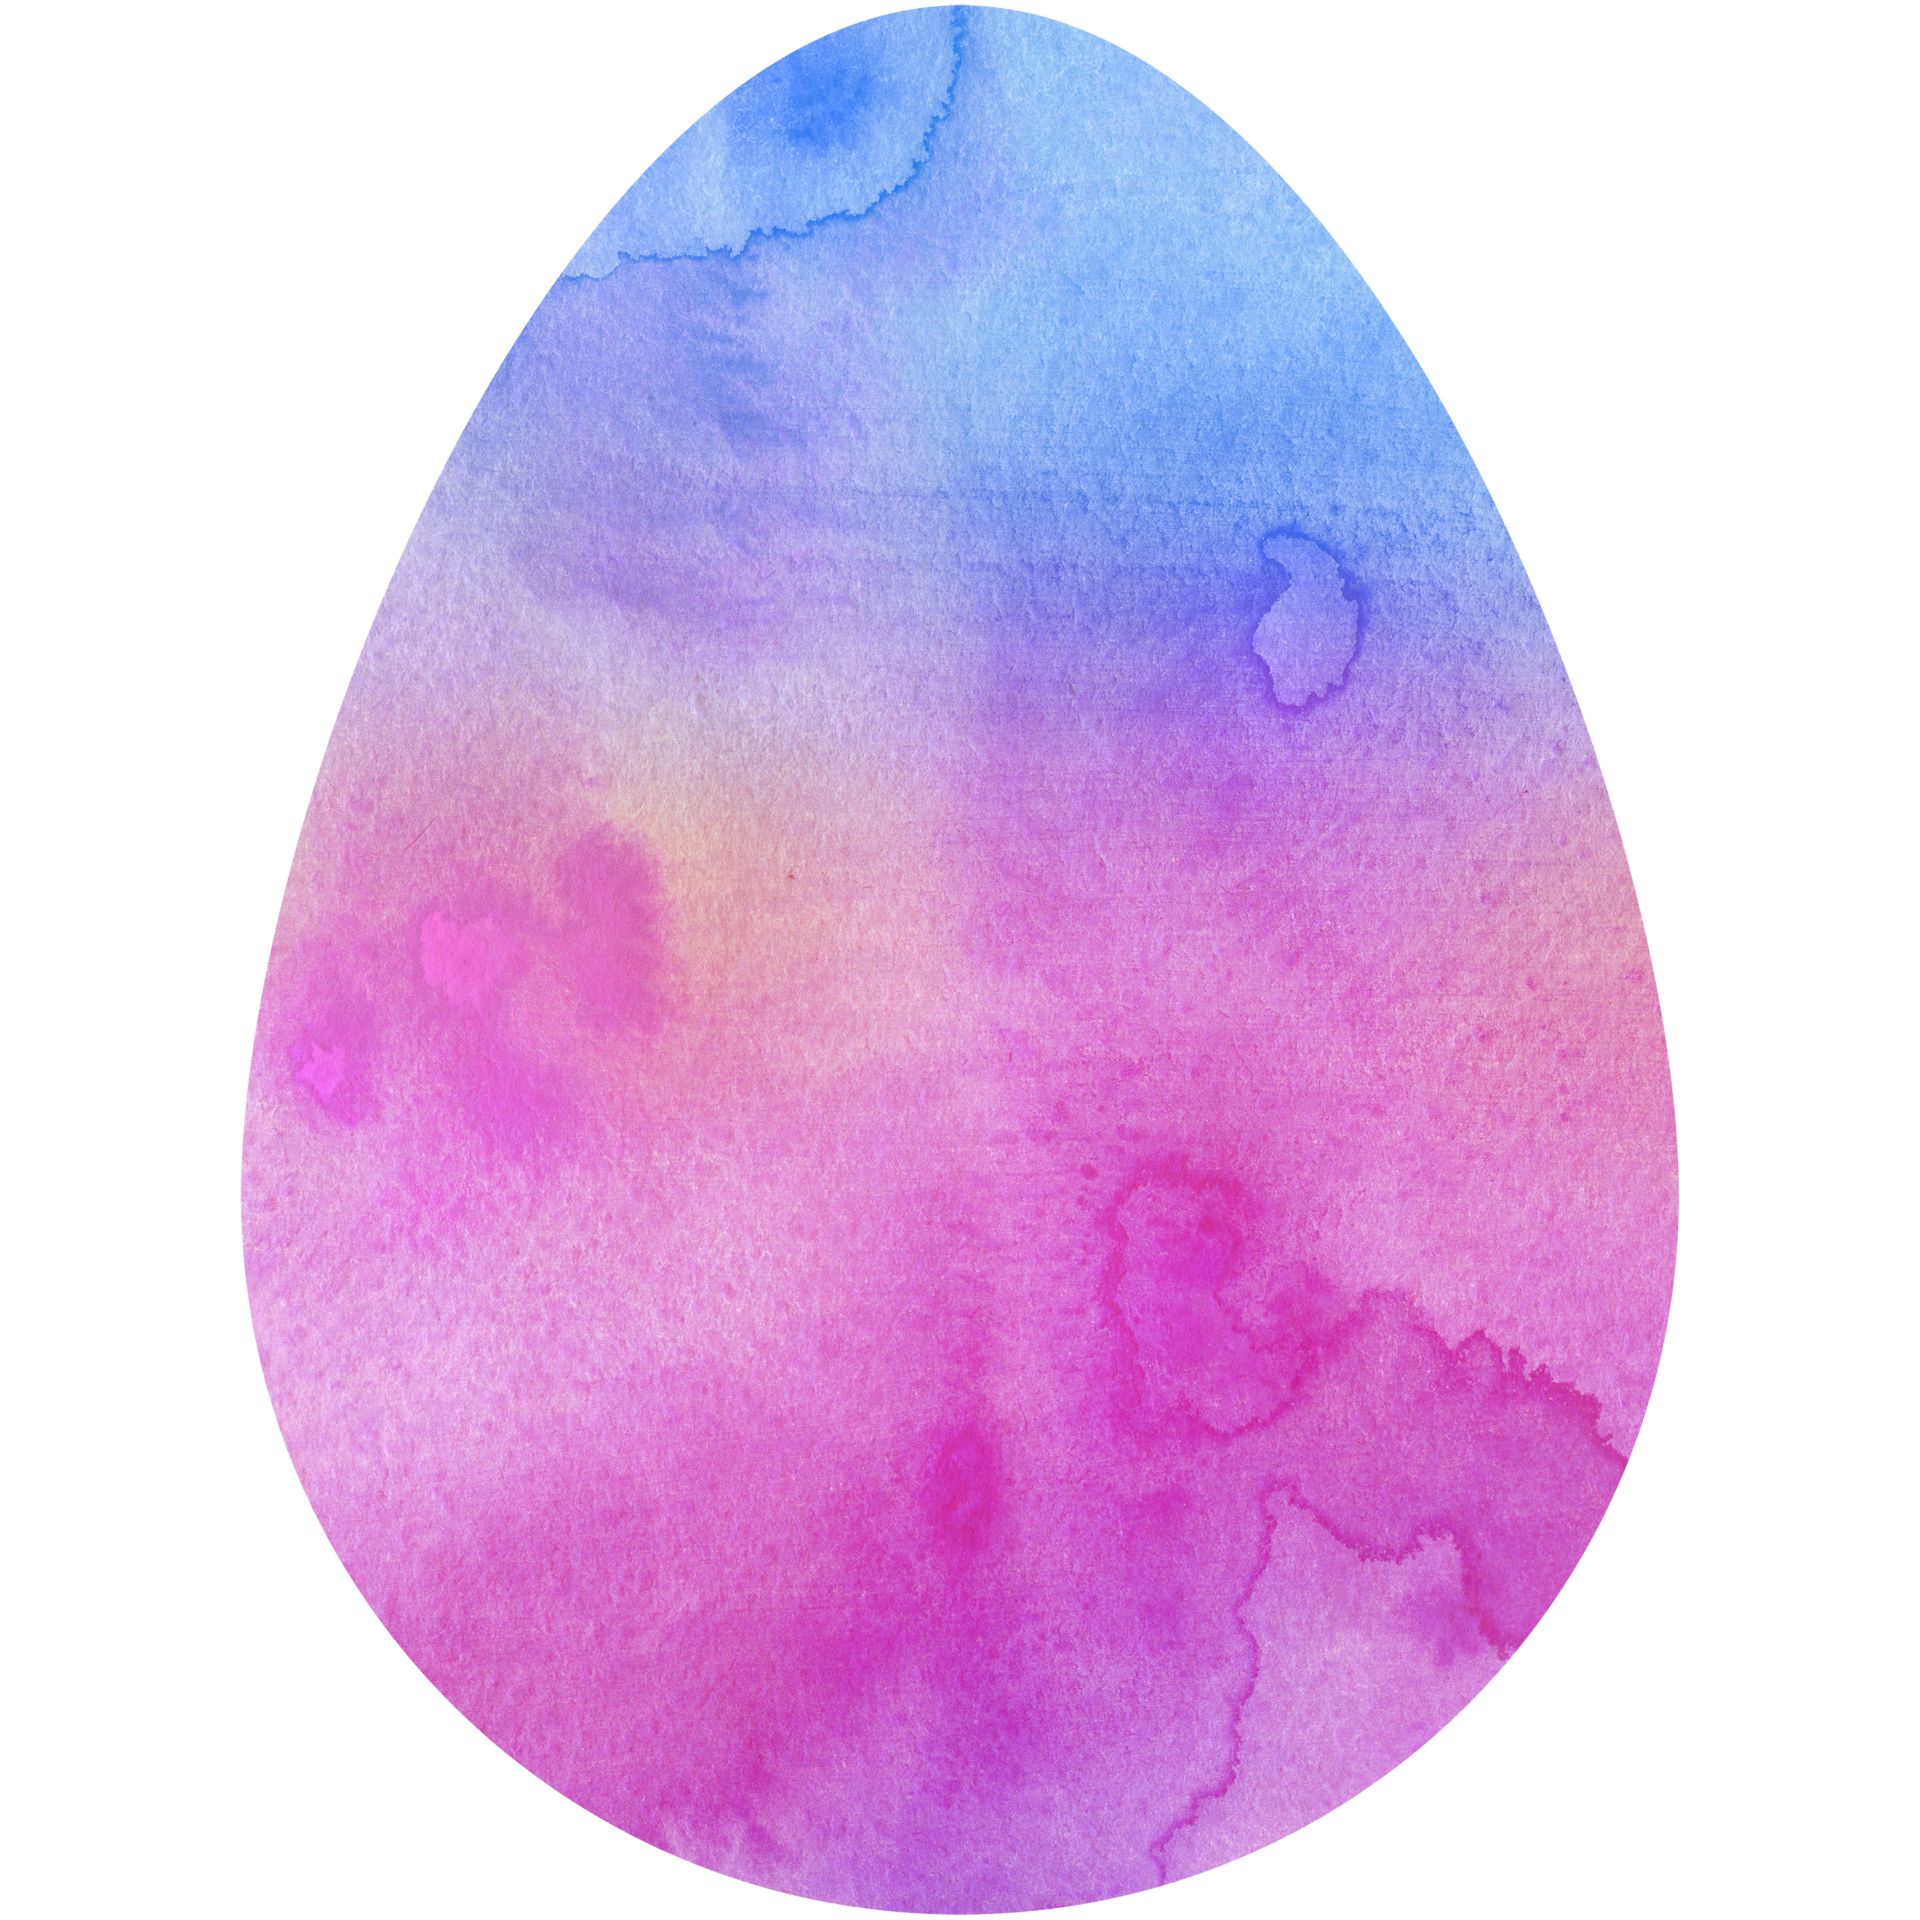 Quả trứng phục sinh màu nước sắc hình bầu dục là một sản phẩm nghệ thuật độc đáo và đầy màu sắc. Với hình dạng bầu dục tinh tế và màu sắc đa dạng, quả trứng phục sinh này chắc chắn sẽ làm bạn cảm thấy thích thú. Hãy xem hình ảnh để tìm hiểu thêm về sản phẩm này!